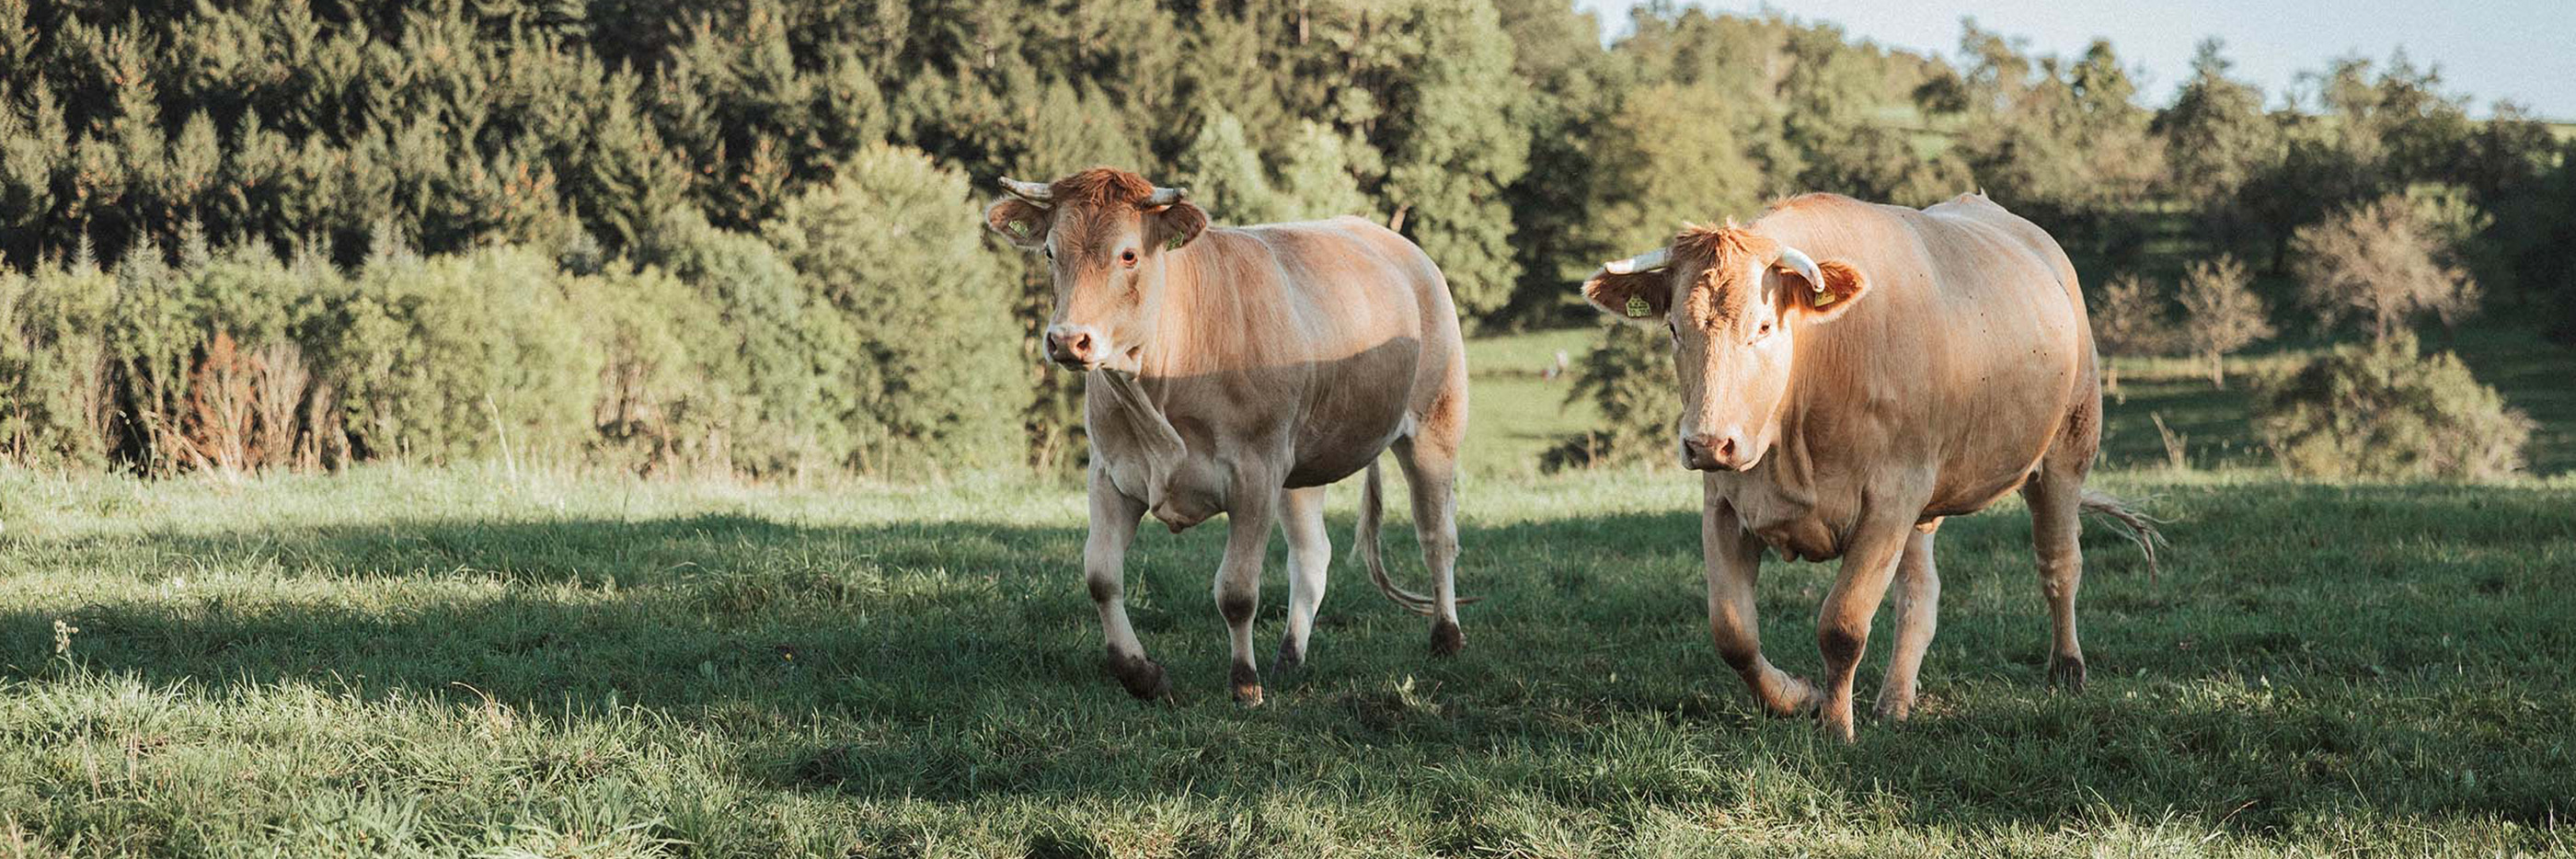 Op de Positerra-weide lopen lichtbruine koeien | mey® 